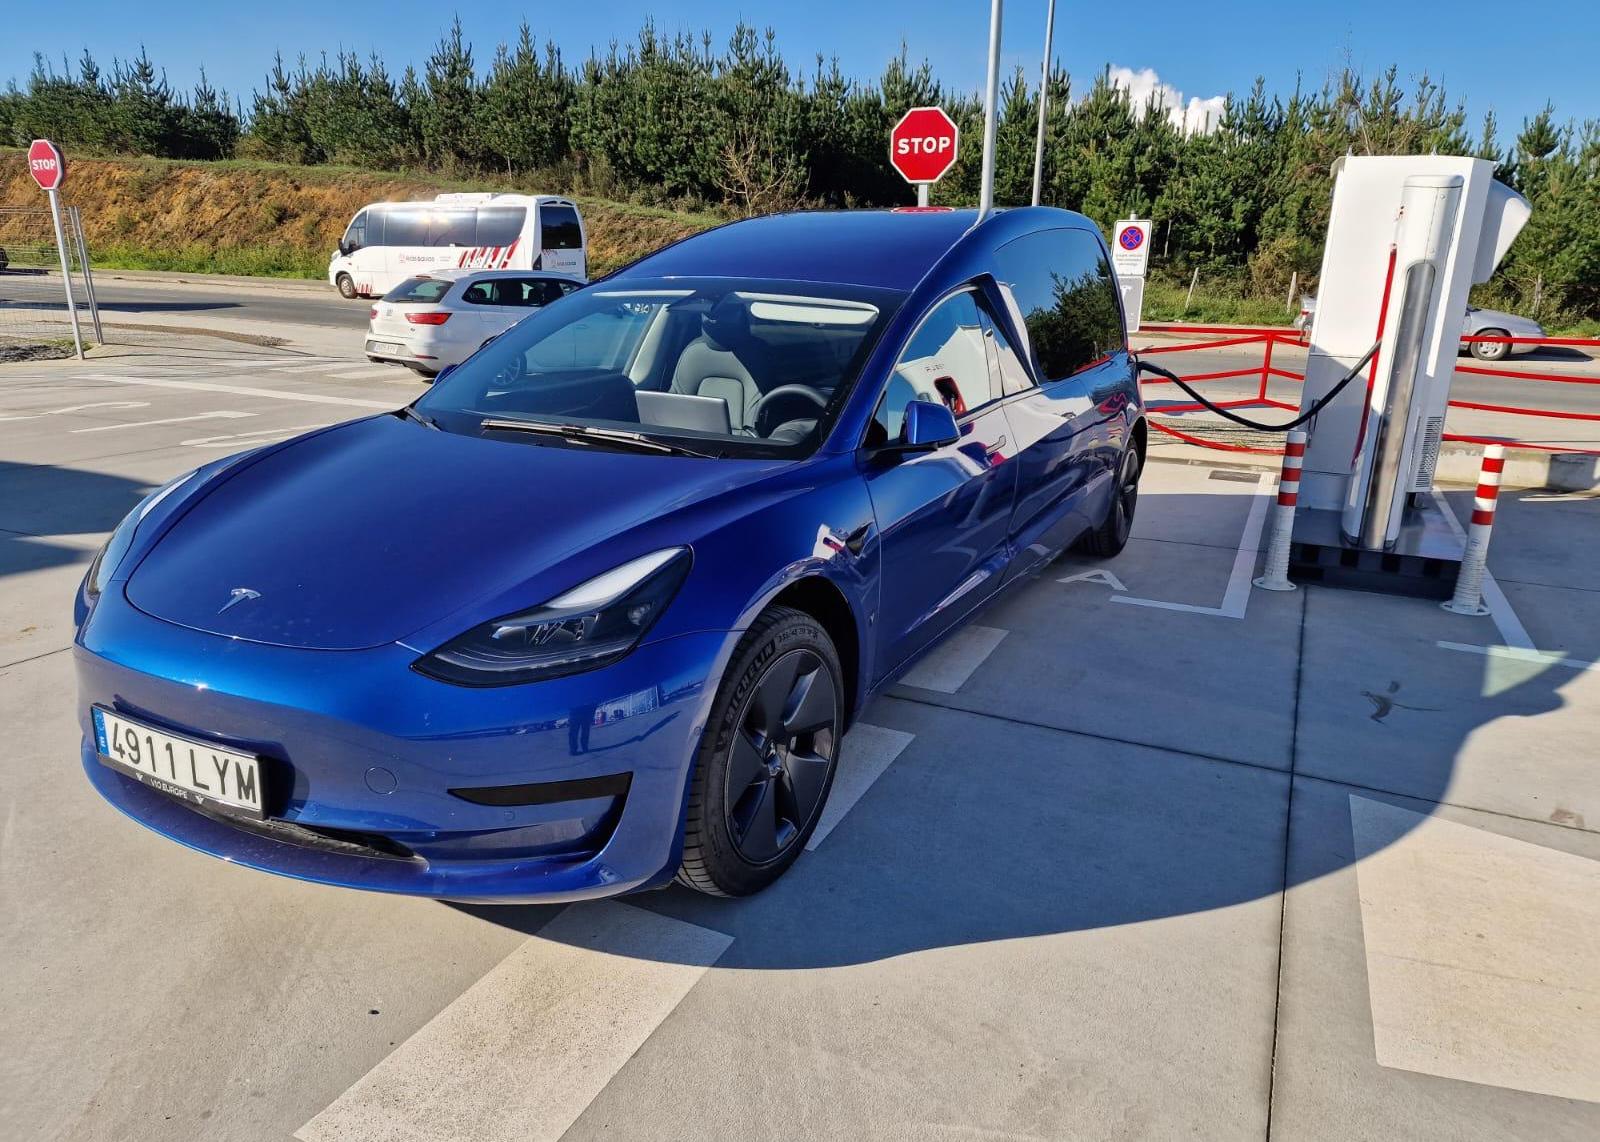 Pompas Fúnebres Arousa dispone de un vehículo fúnebre eléctrico de la marca Tesla